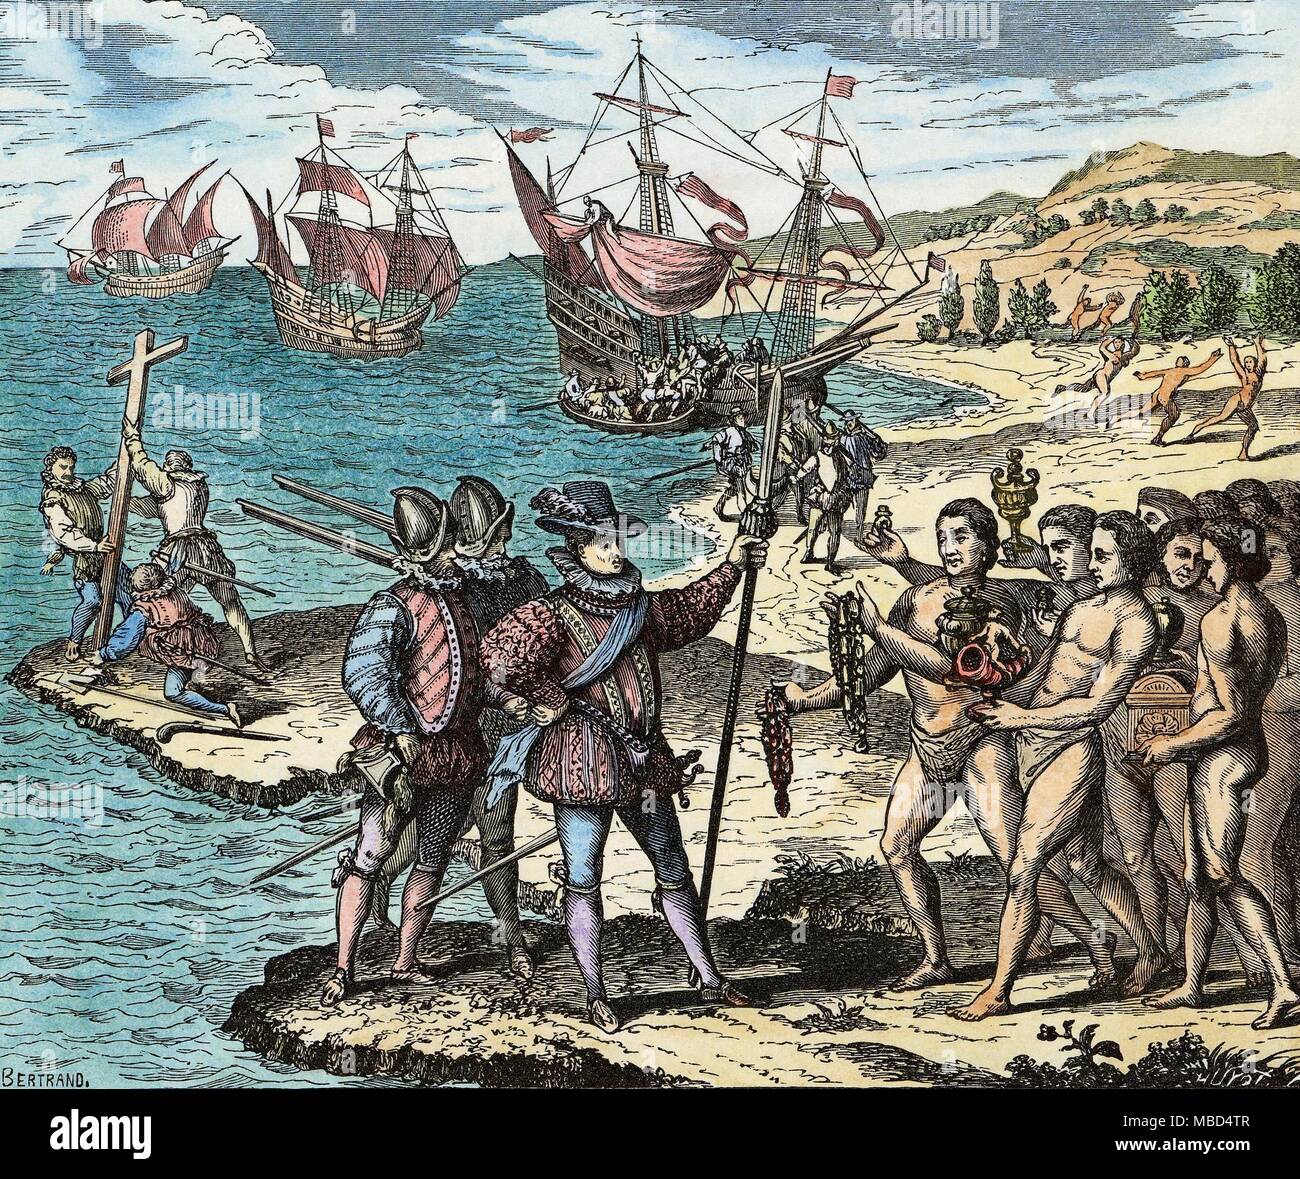 Histoire De Lamerica Columbus Le 12 Mai 1492 Christophe Colomb érige La Croix Et Investit